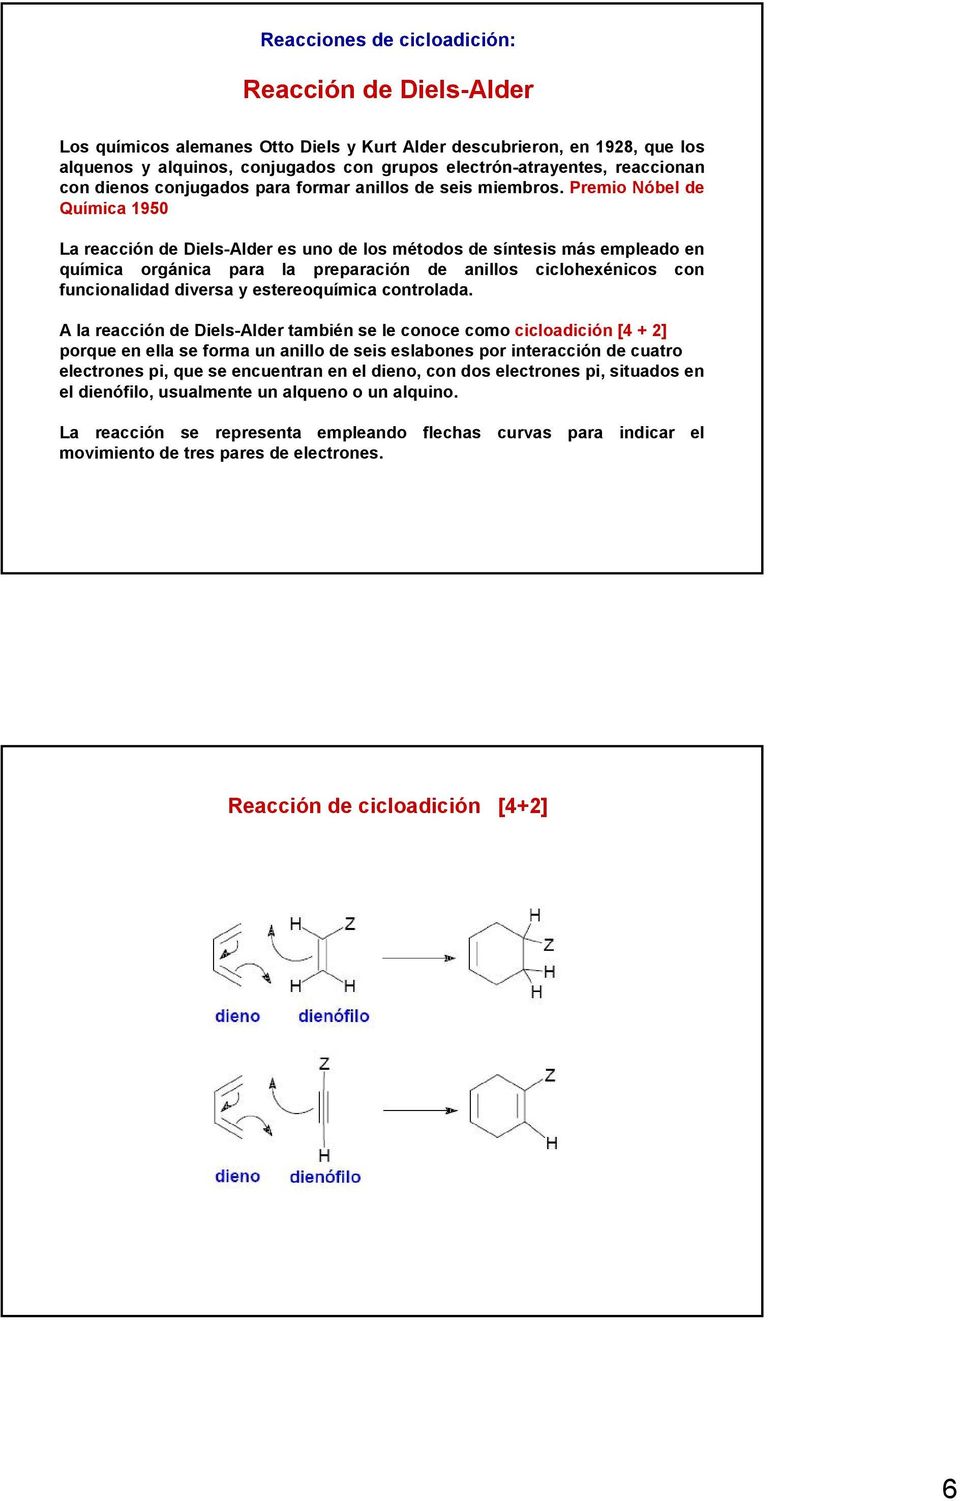 Premio Nóbel de Química 1950 La reacción de Diels-Alder es uno de los métodos de síntesis más empleado en química orgánica para la preparación de anillos ciclohexénicos con funcionalidad diversa y